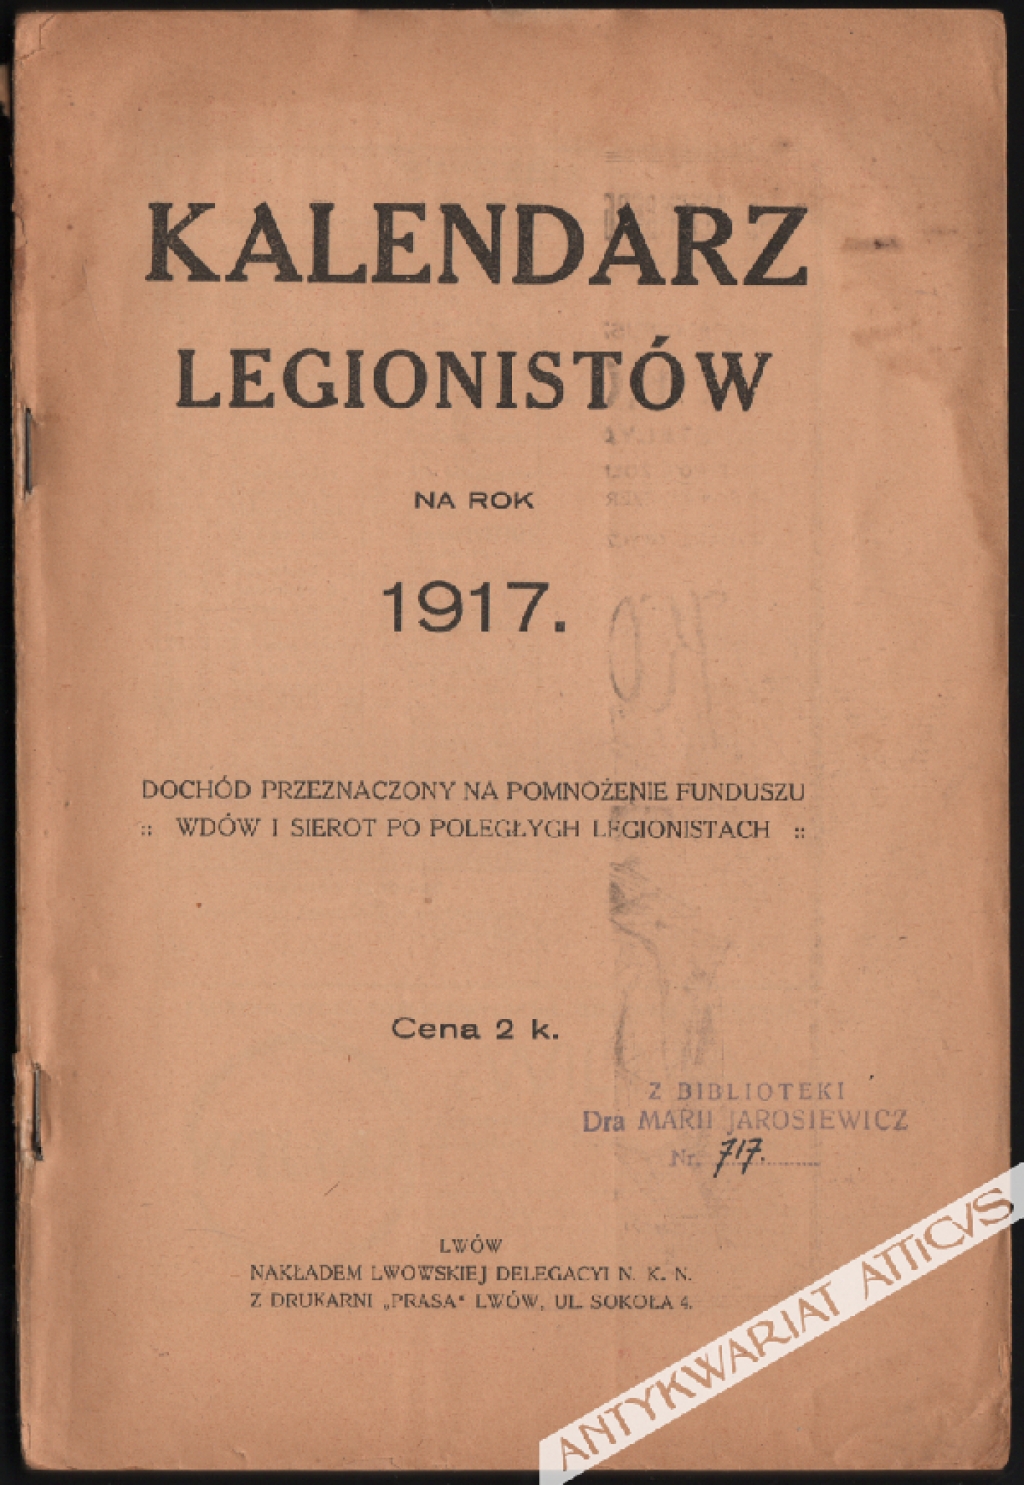 Kalendarz Legionistów na rok 1917